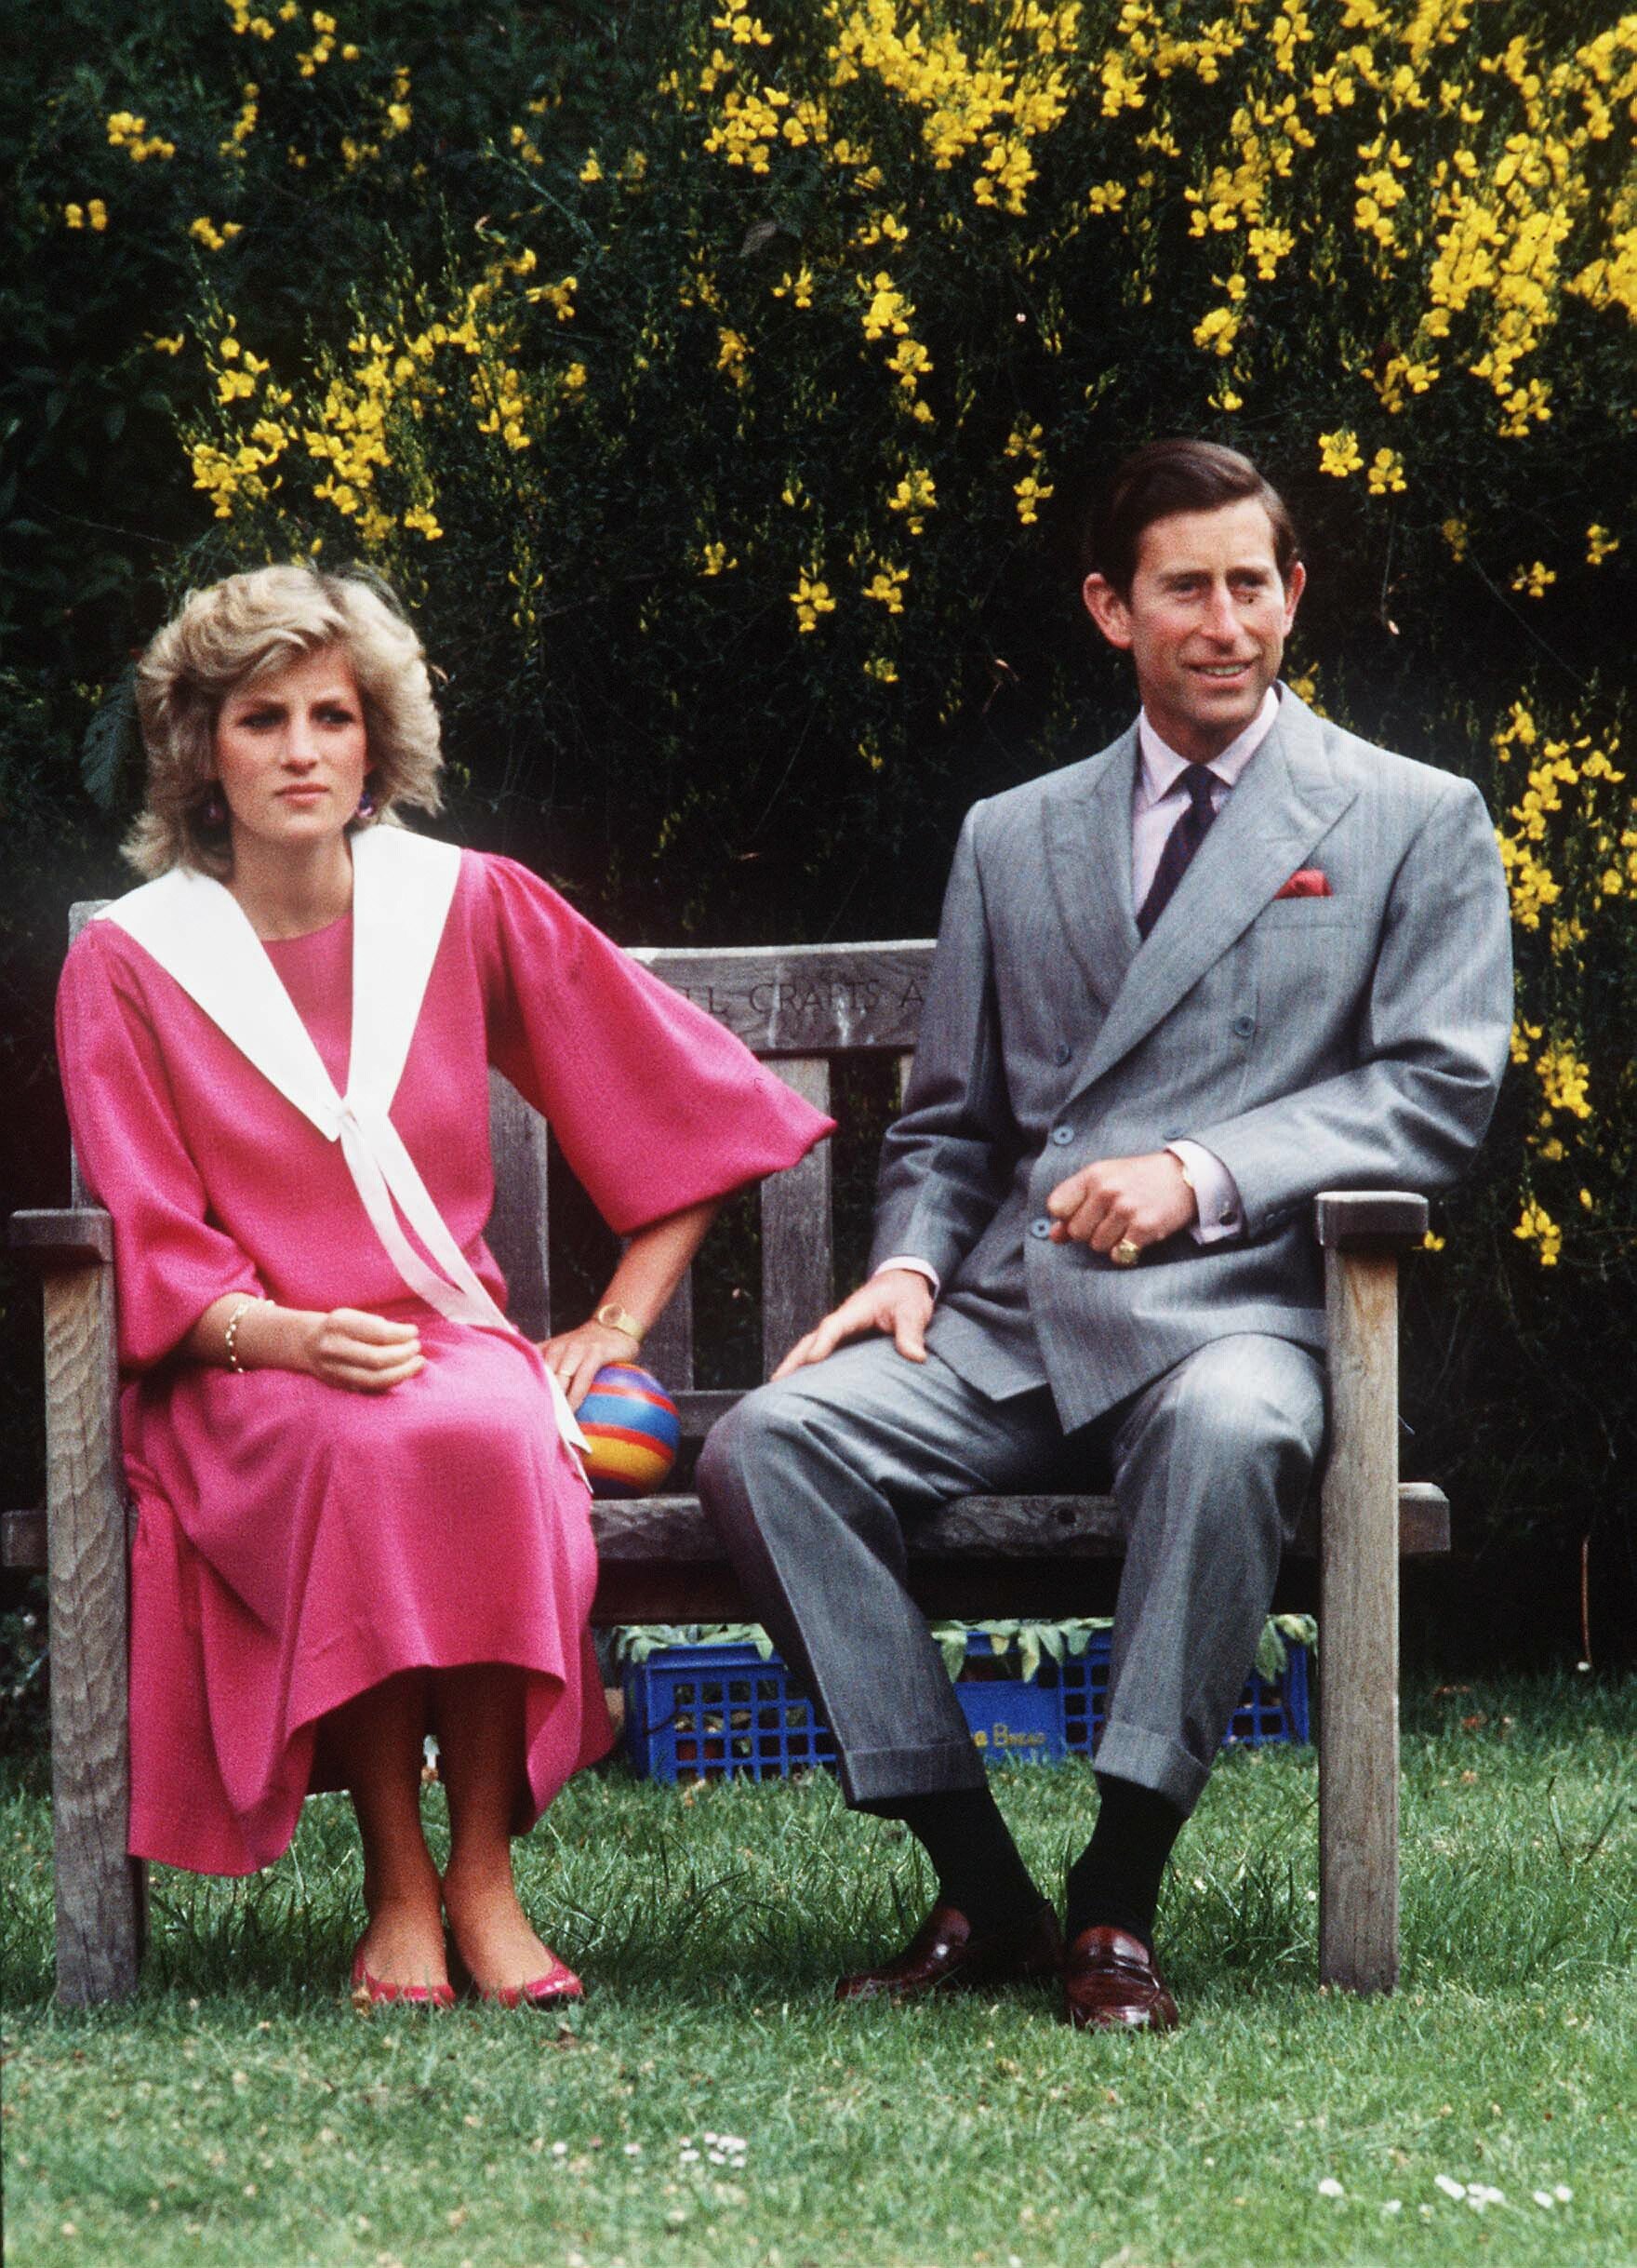 Le Prince Charles et la Princesse Diana, enceinte de 6 mois du Prince Harry, assis sur un banc en bois lors d'un photocall dans le jardin de leur maison à Kensington Palace le 12 juin 1984 à Londres, Royaume-Uni. / Source : Getty Images